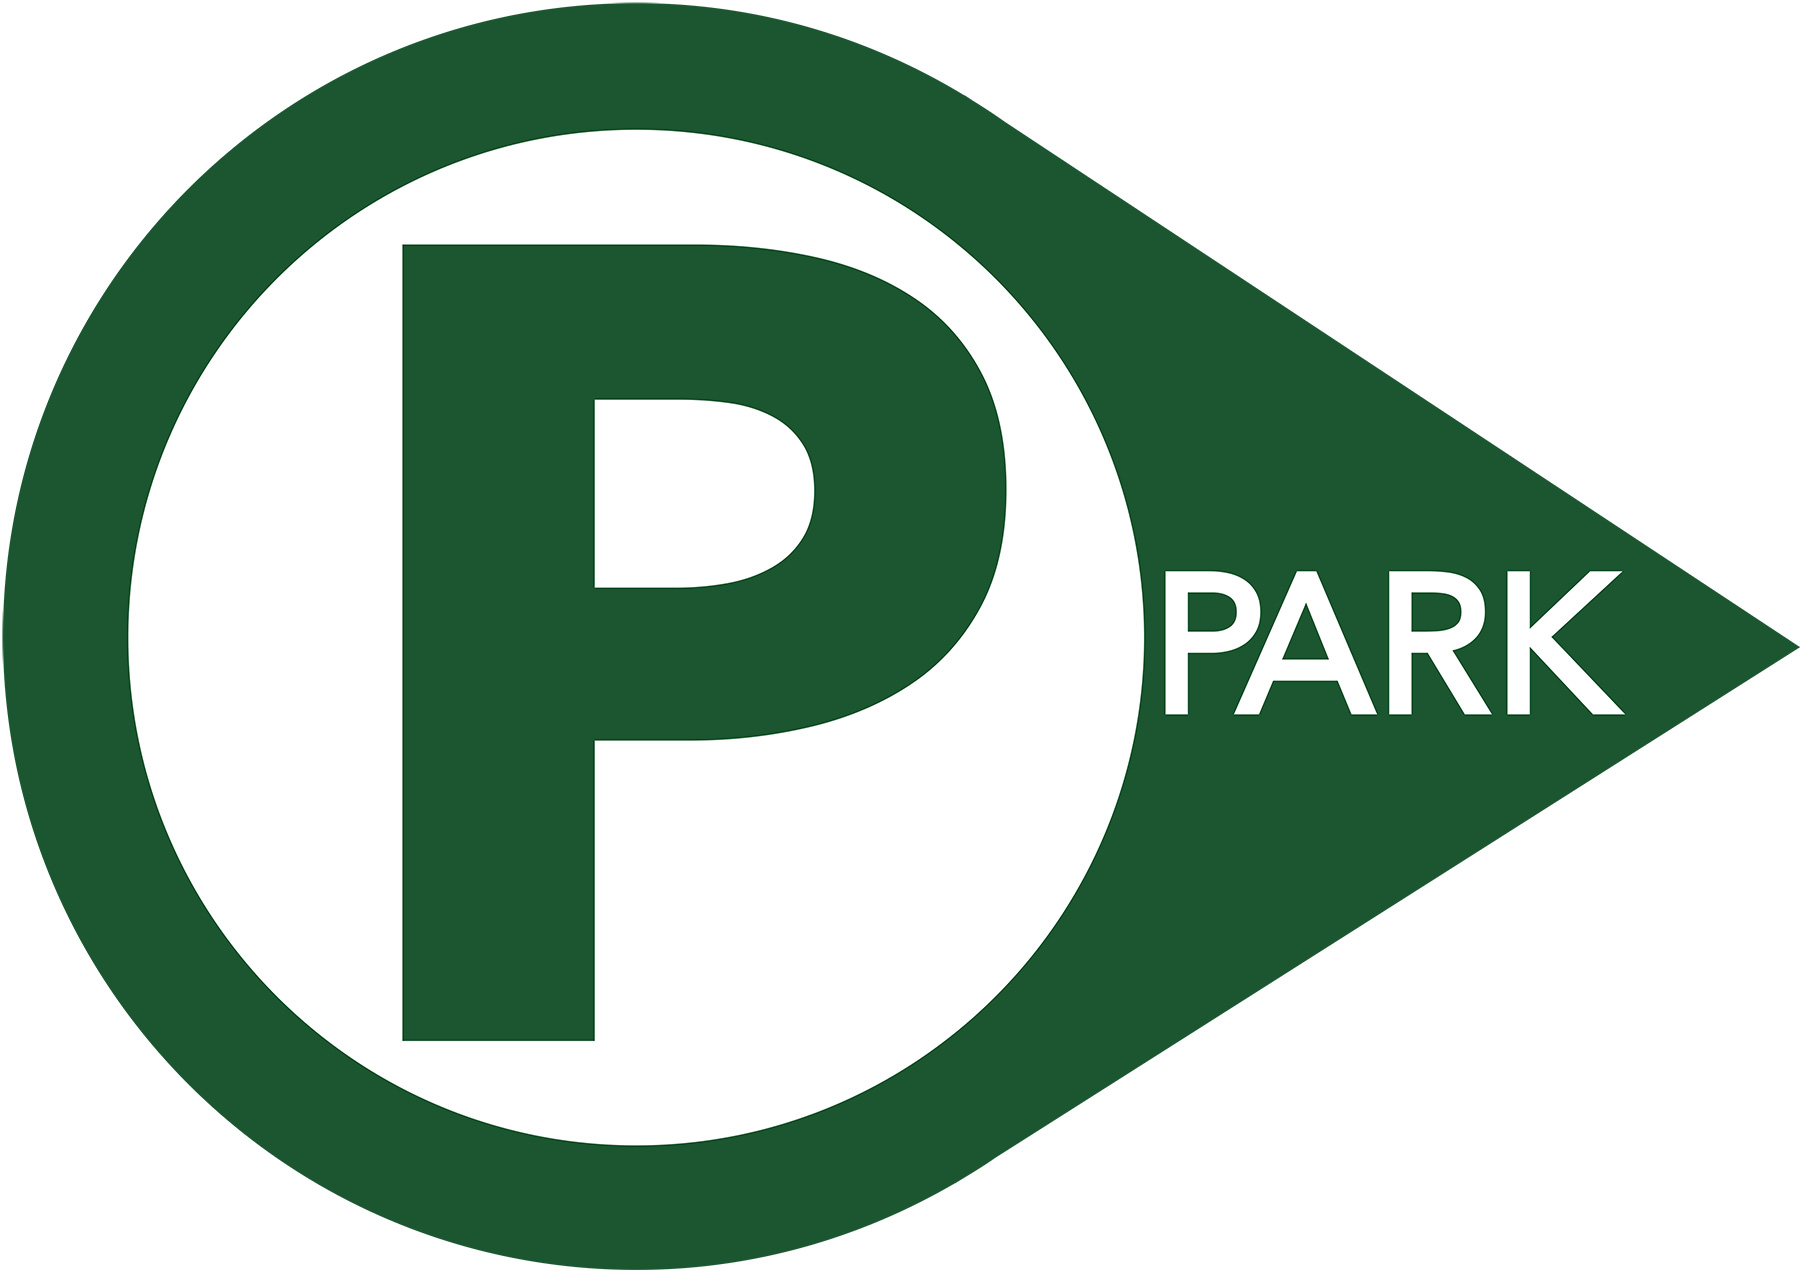 Consultez des offres location de parking sur internet